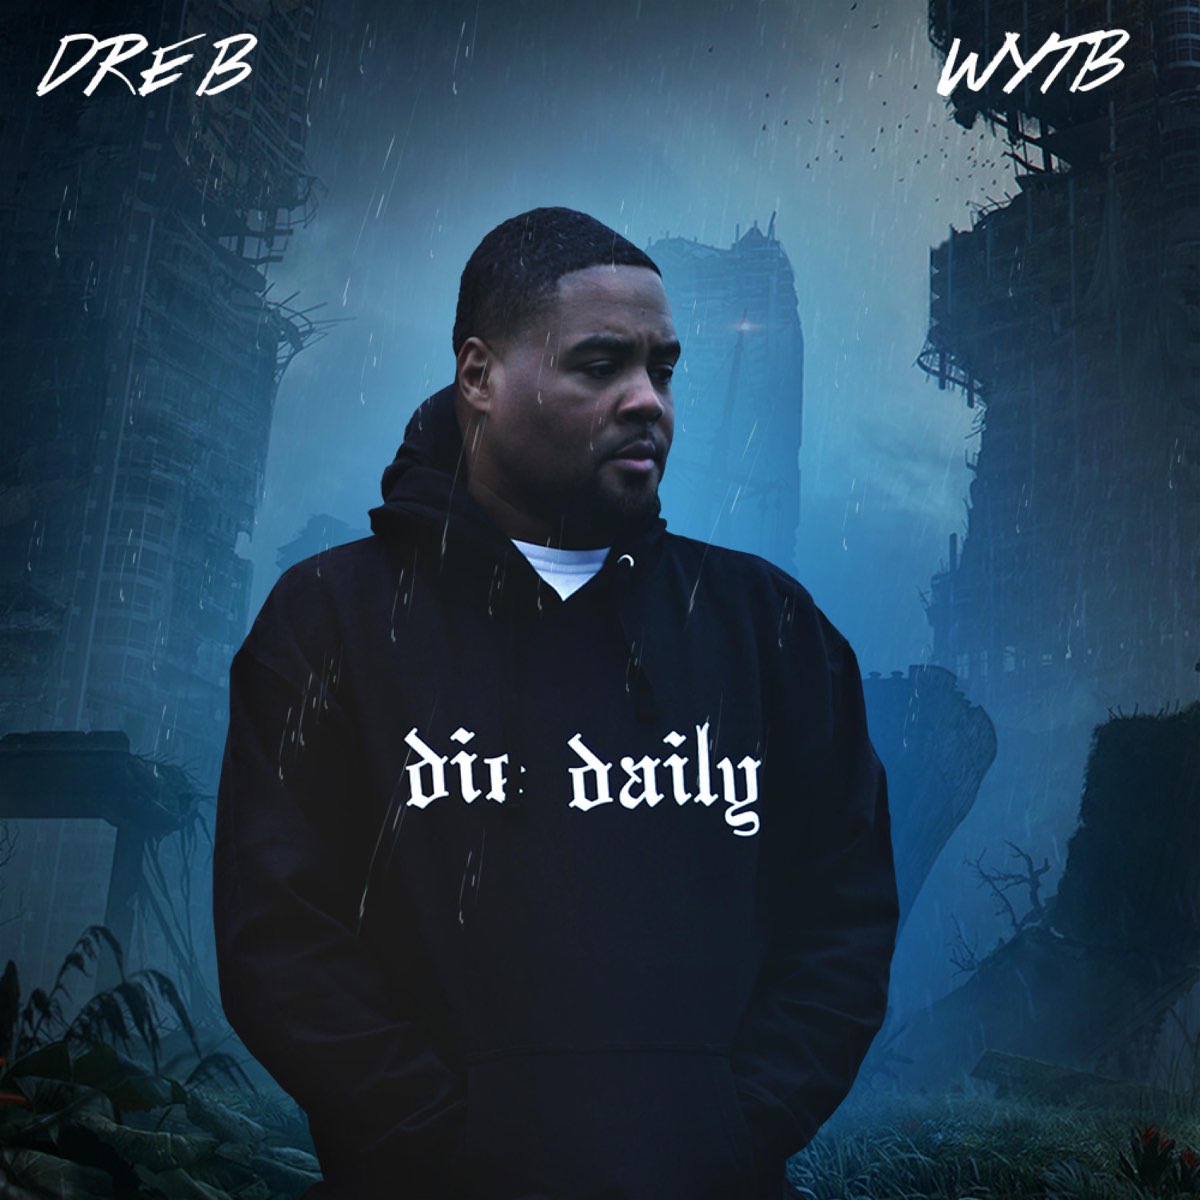 Dre Bの「Wytb - Single」をApple Musicで